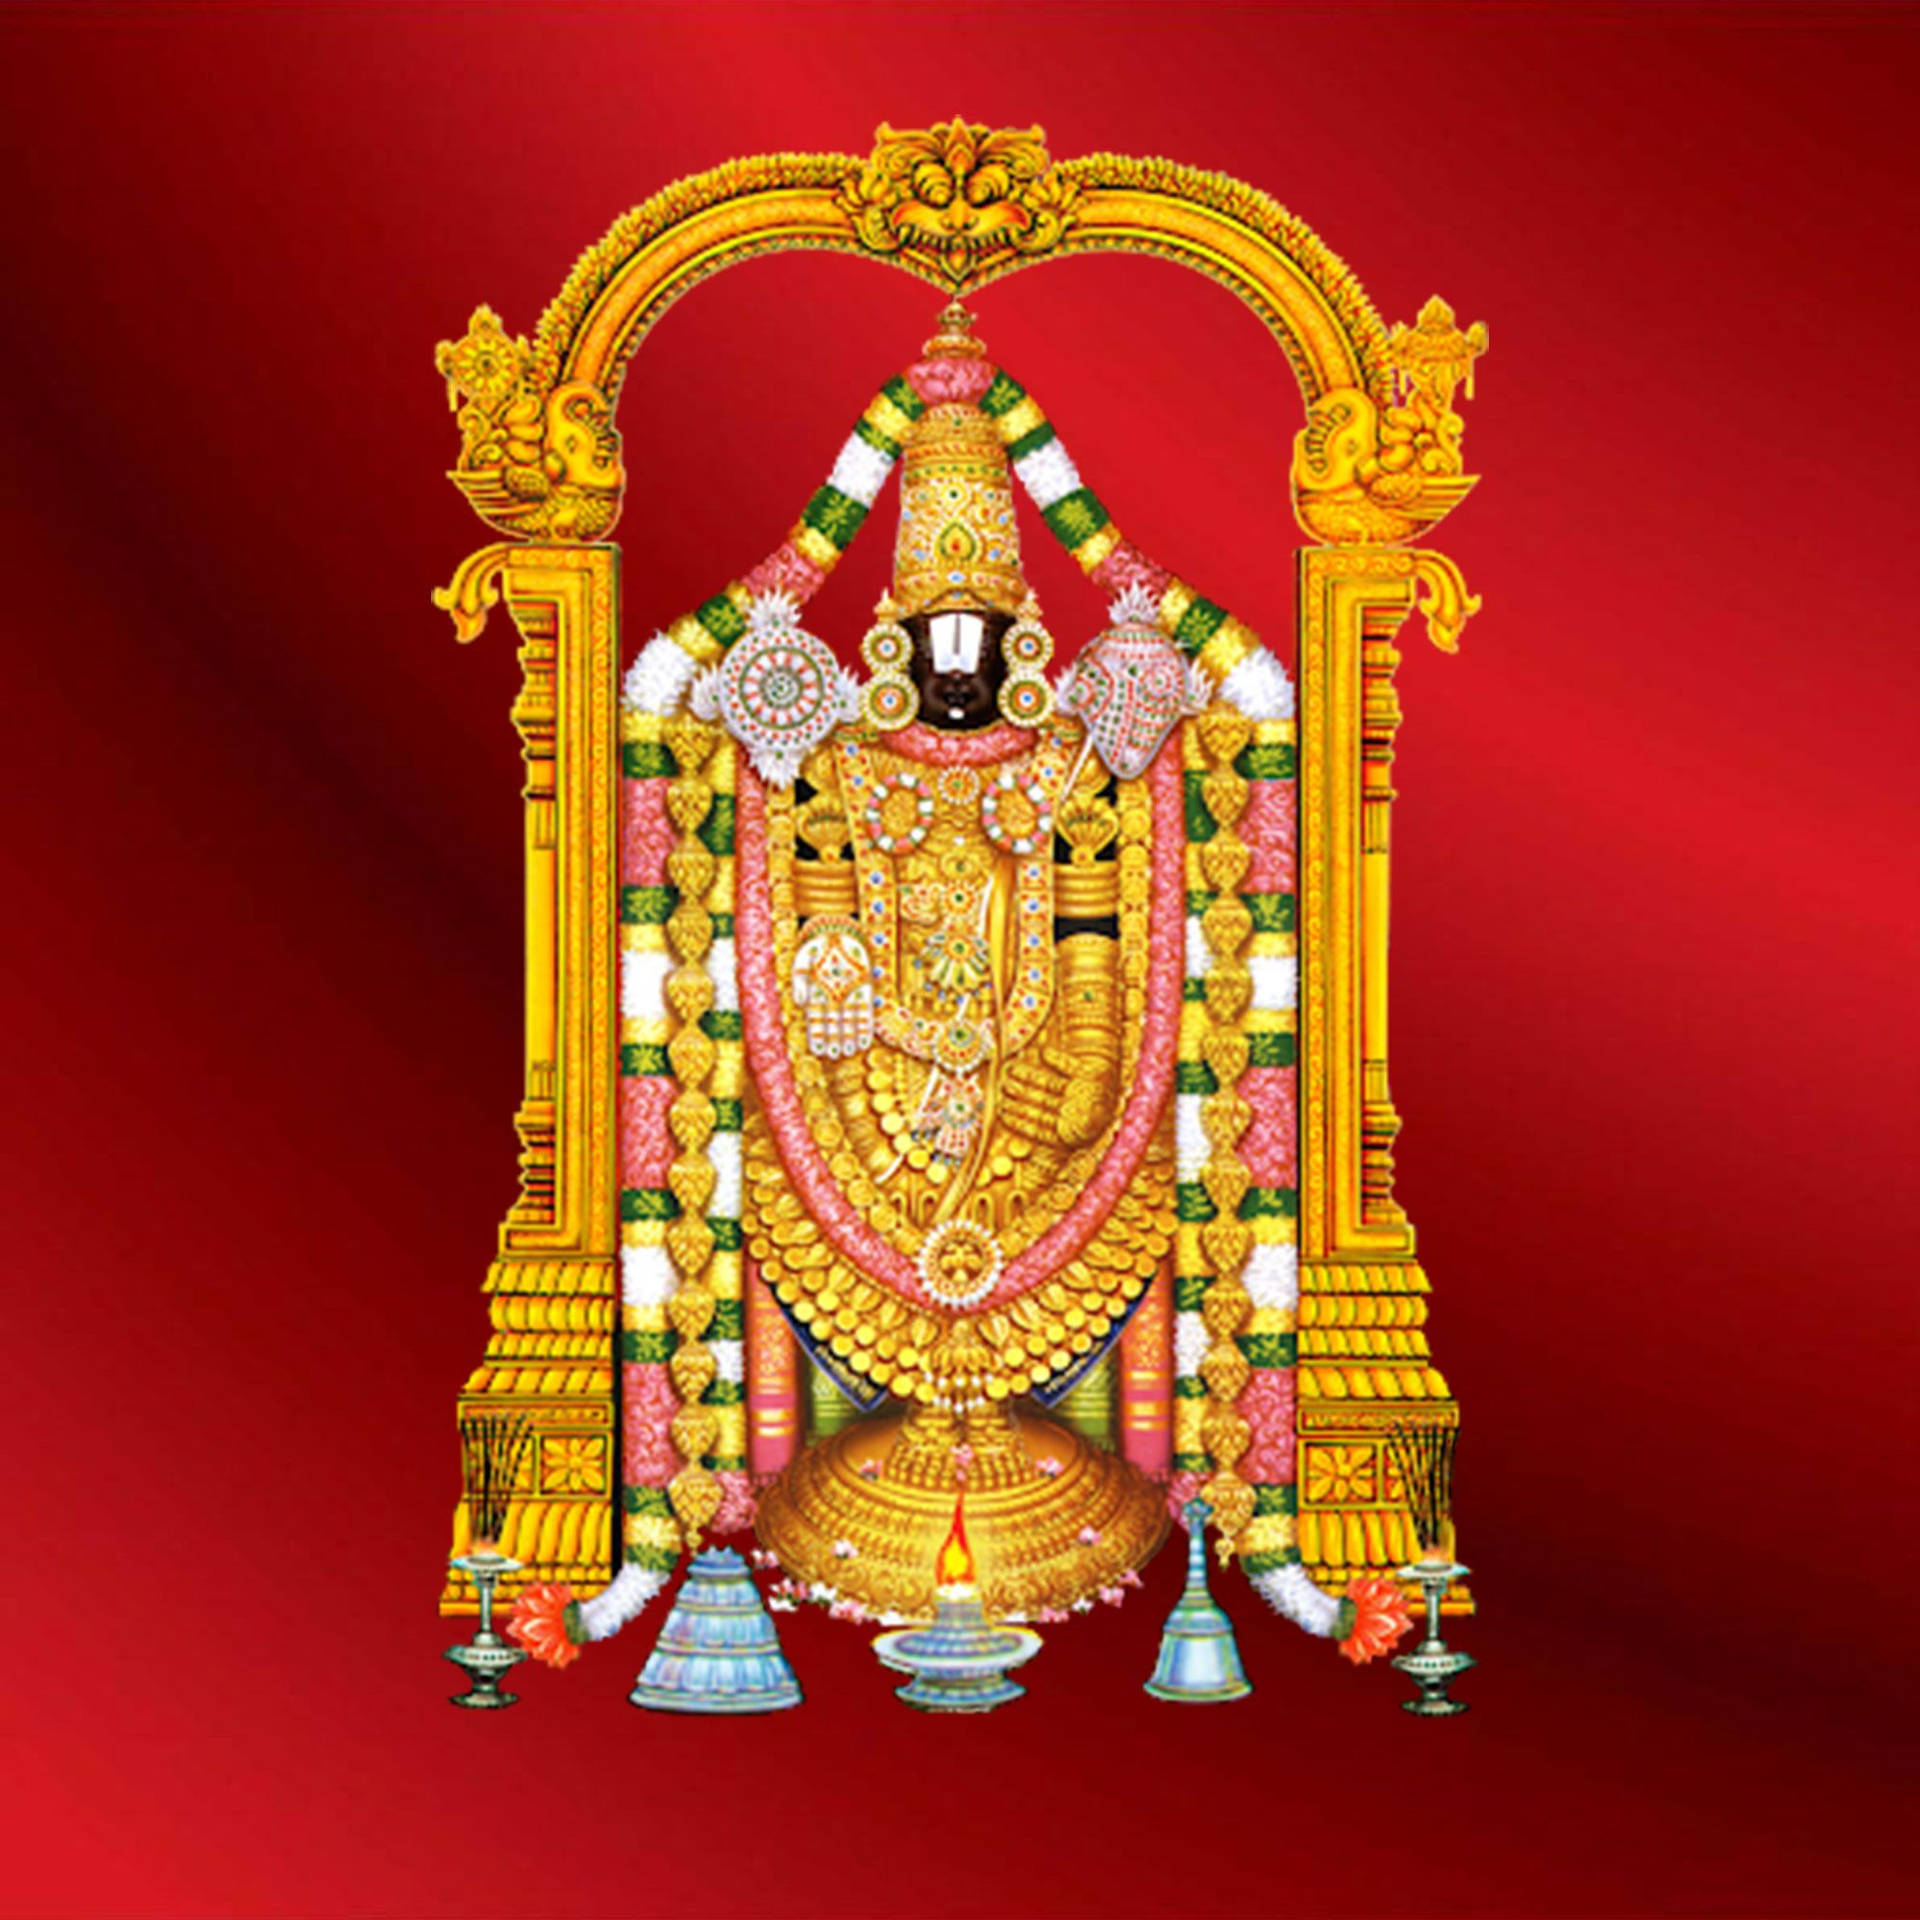 Venkateswara Swamy Hindu Avatar Of Vishnu